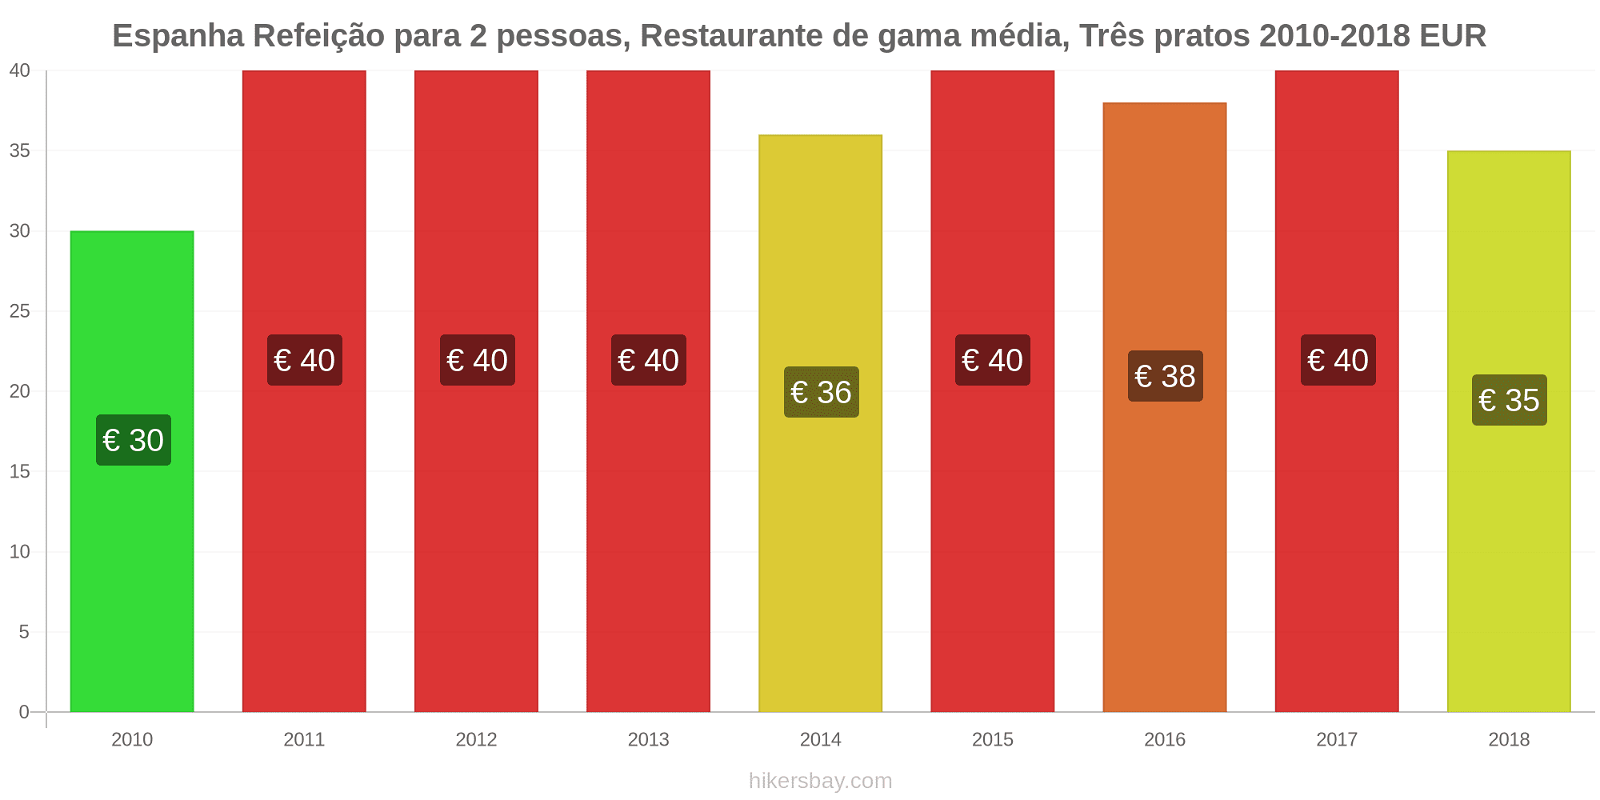 Espanha mudanças de preços Refeição para 2 pessoas, restaurante de gama média, três pratos hikersbay.com